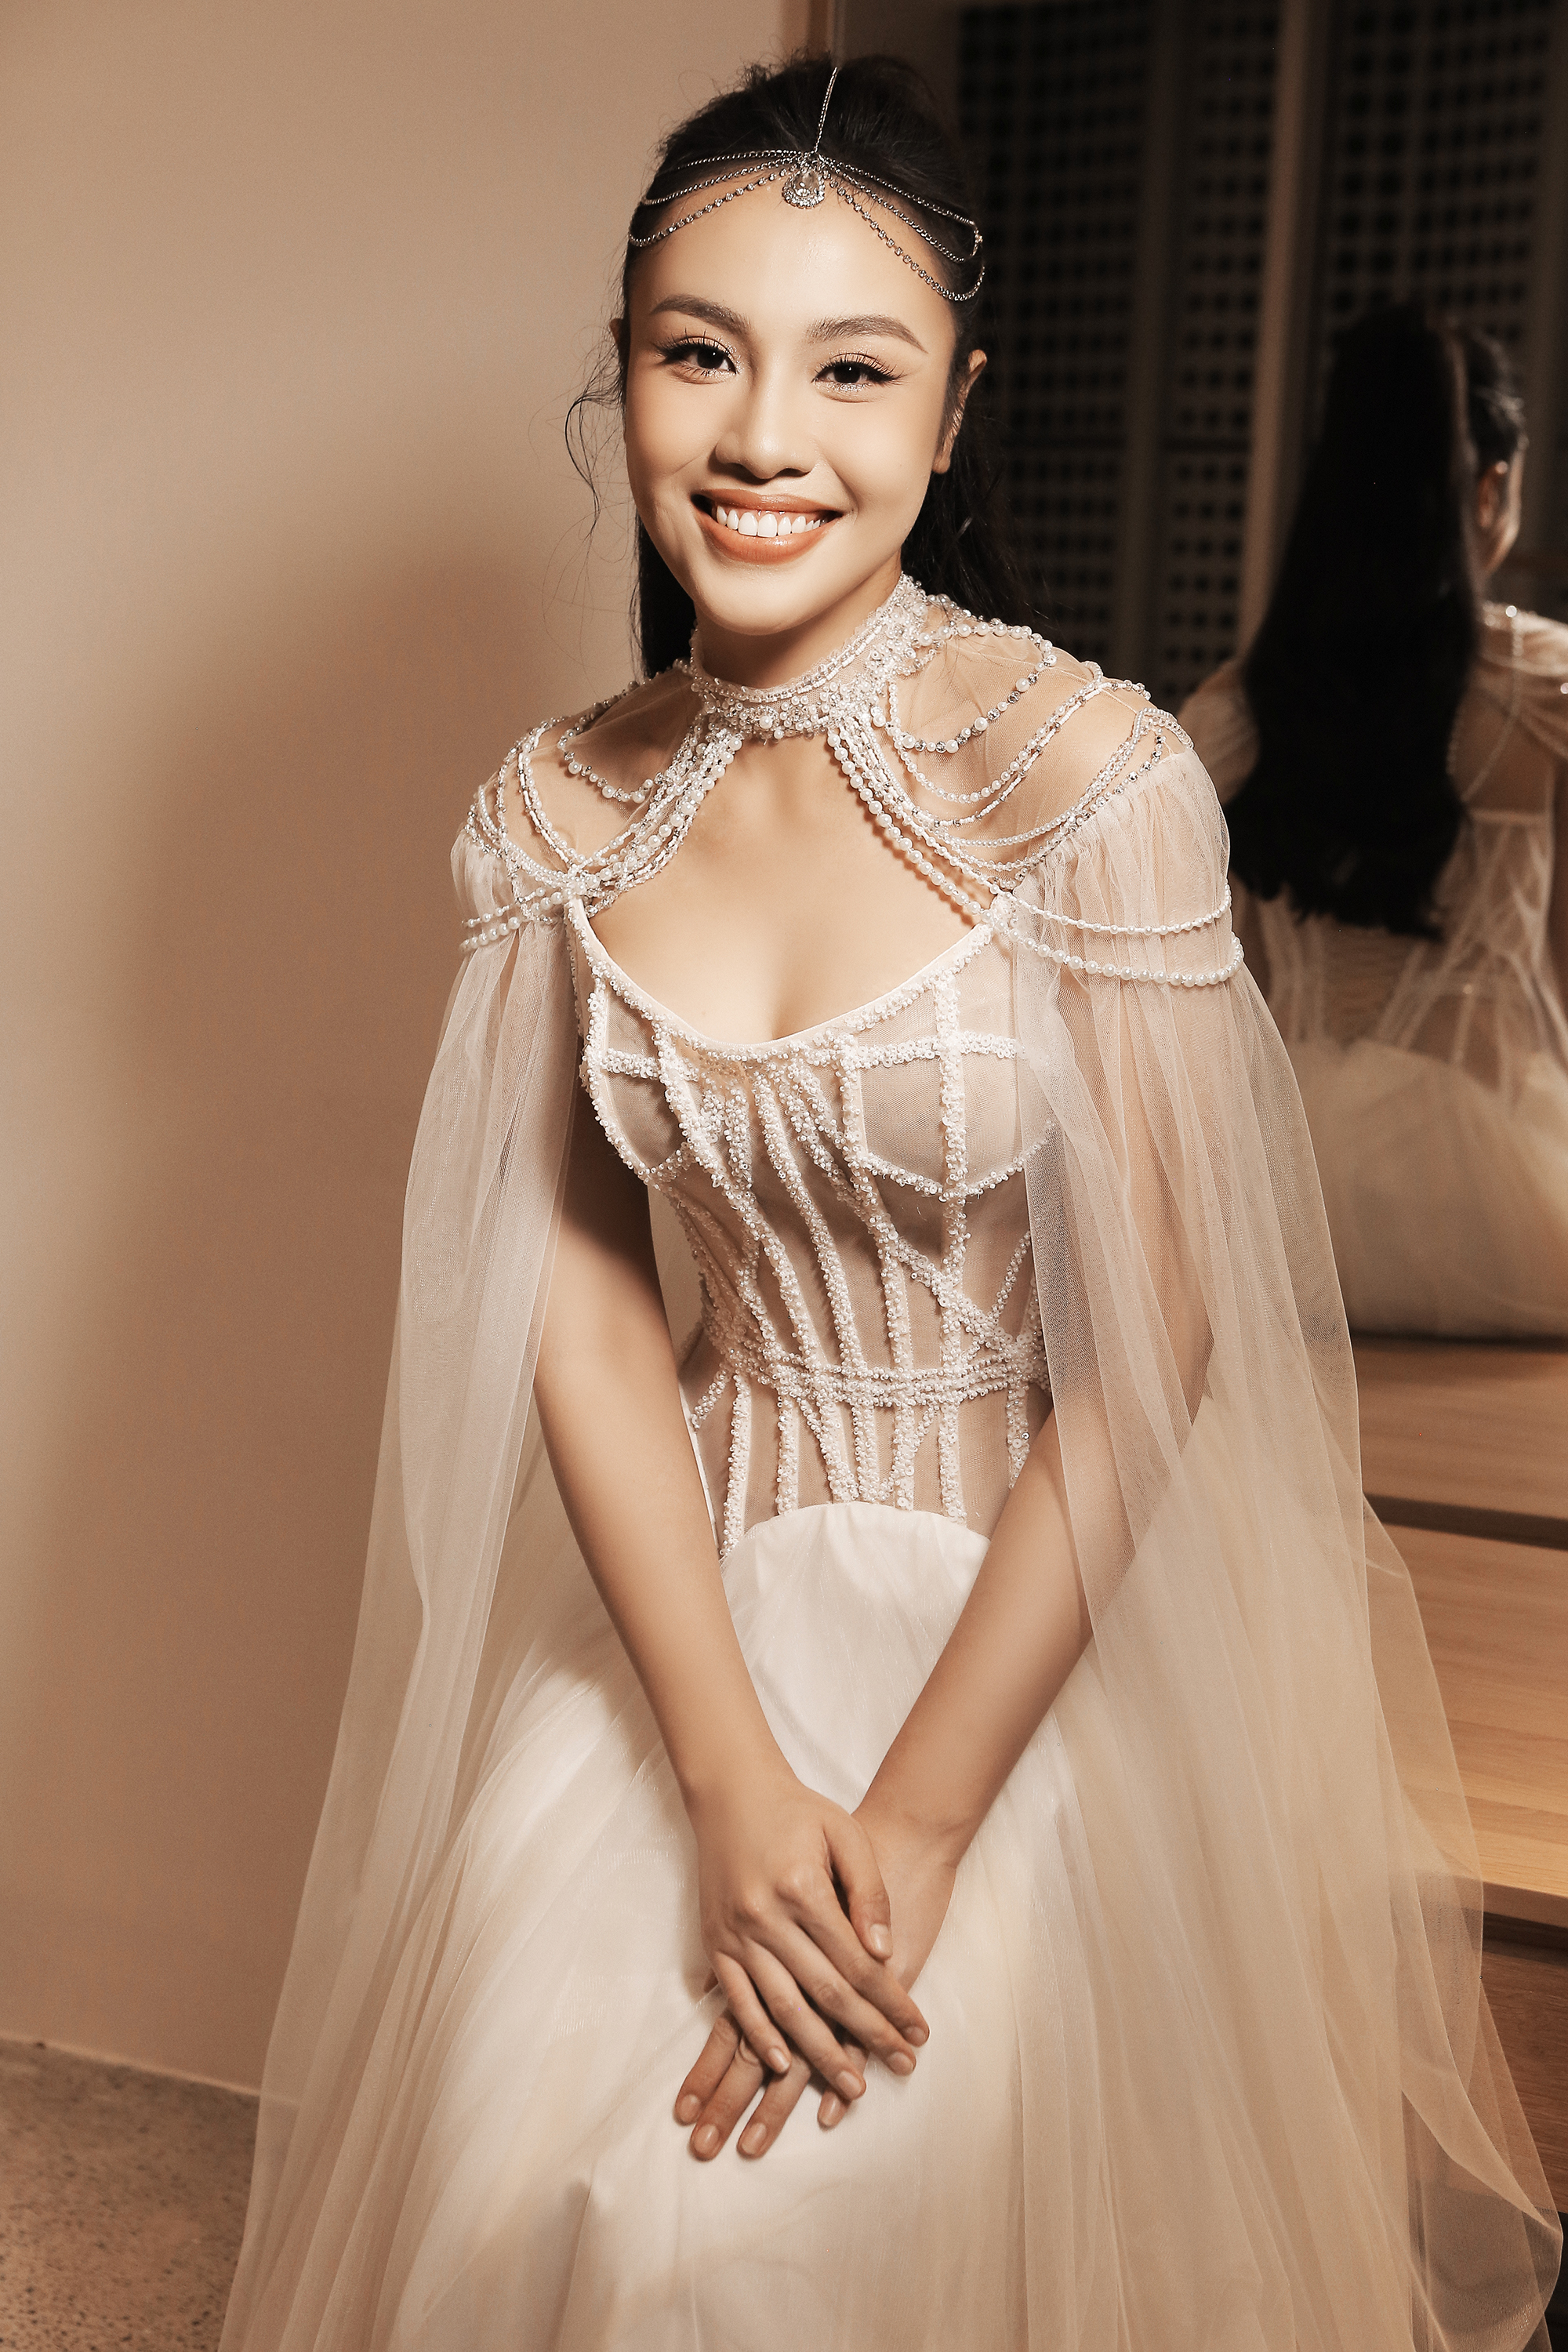 Á hậu Thủy Tiên trình diễn áo cưới cùng Hoa hậu đẹp nhất châu Á 2009 - Ảnh 4.